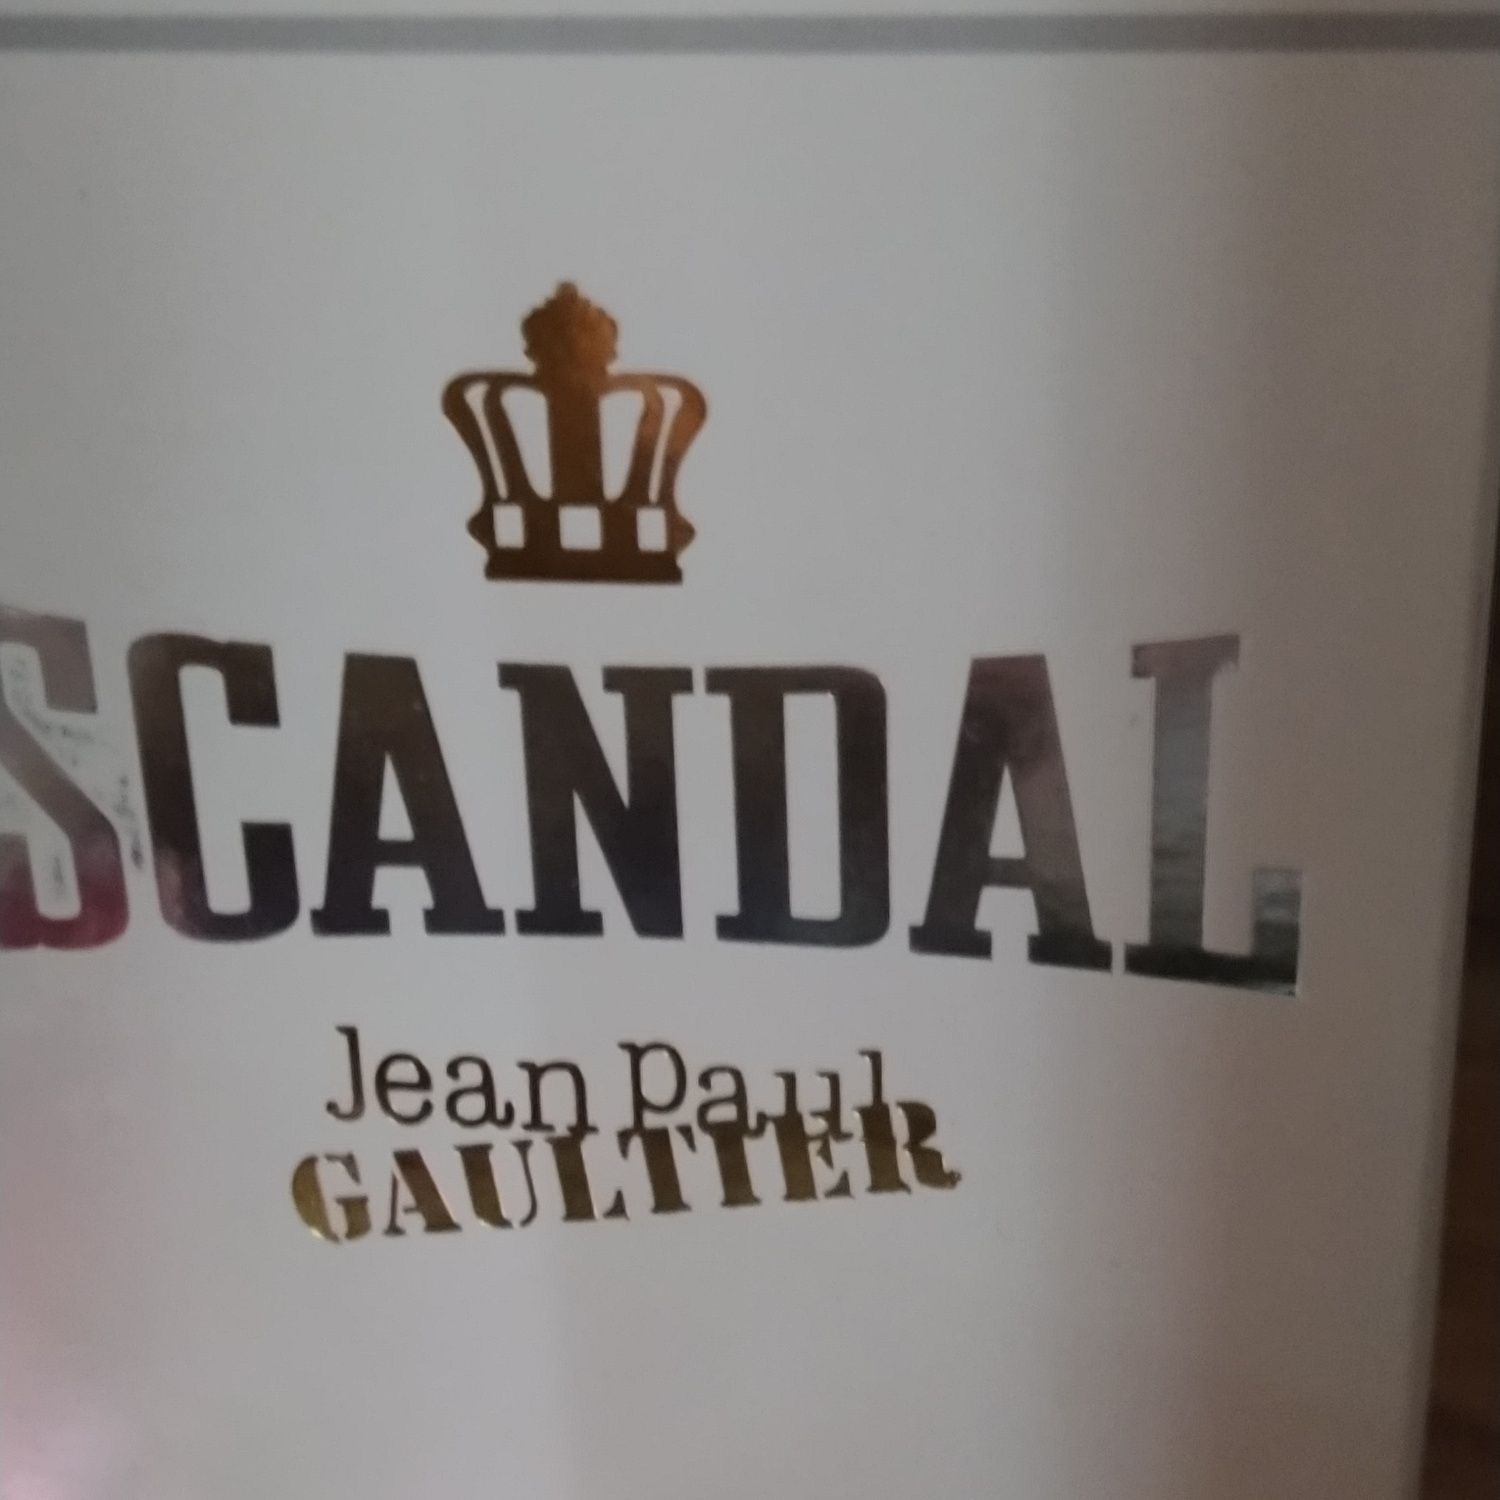 Scandal Jean Paul guiltier